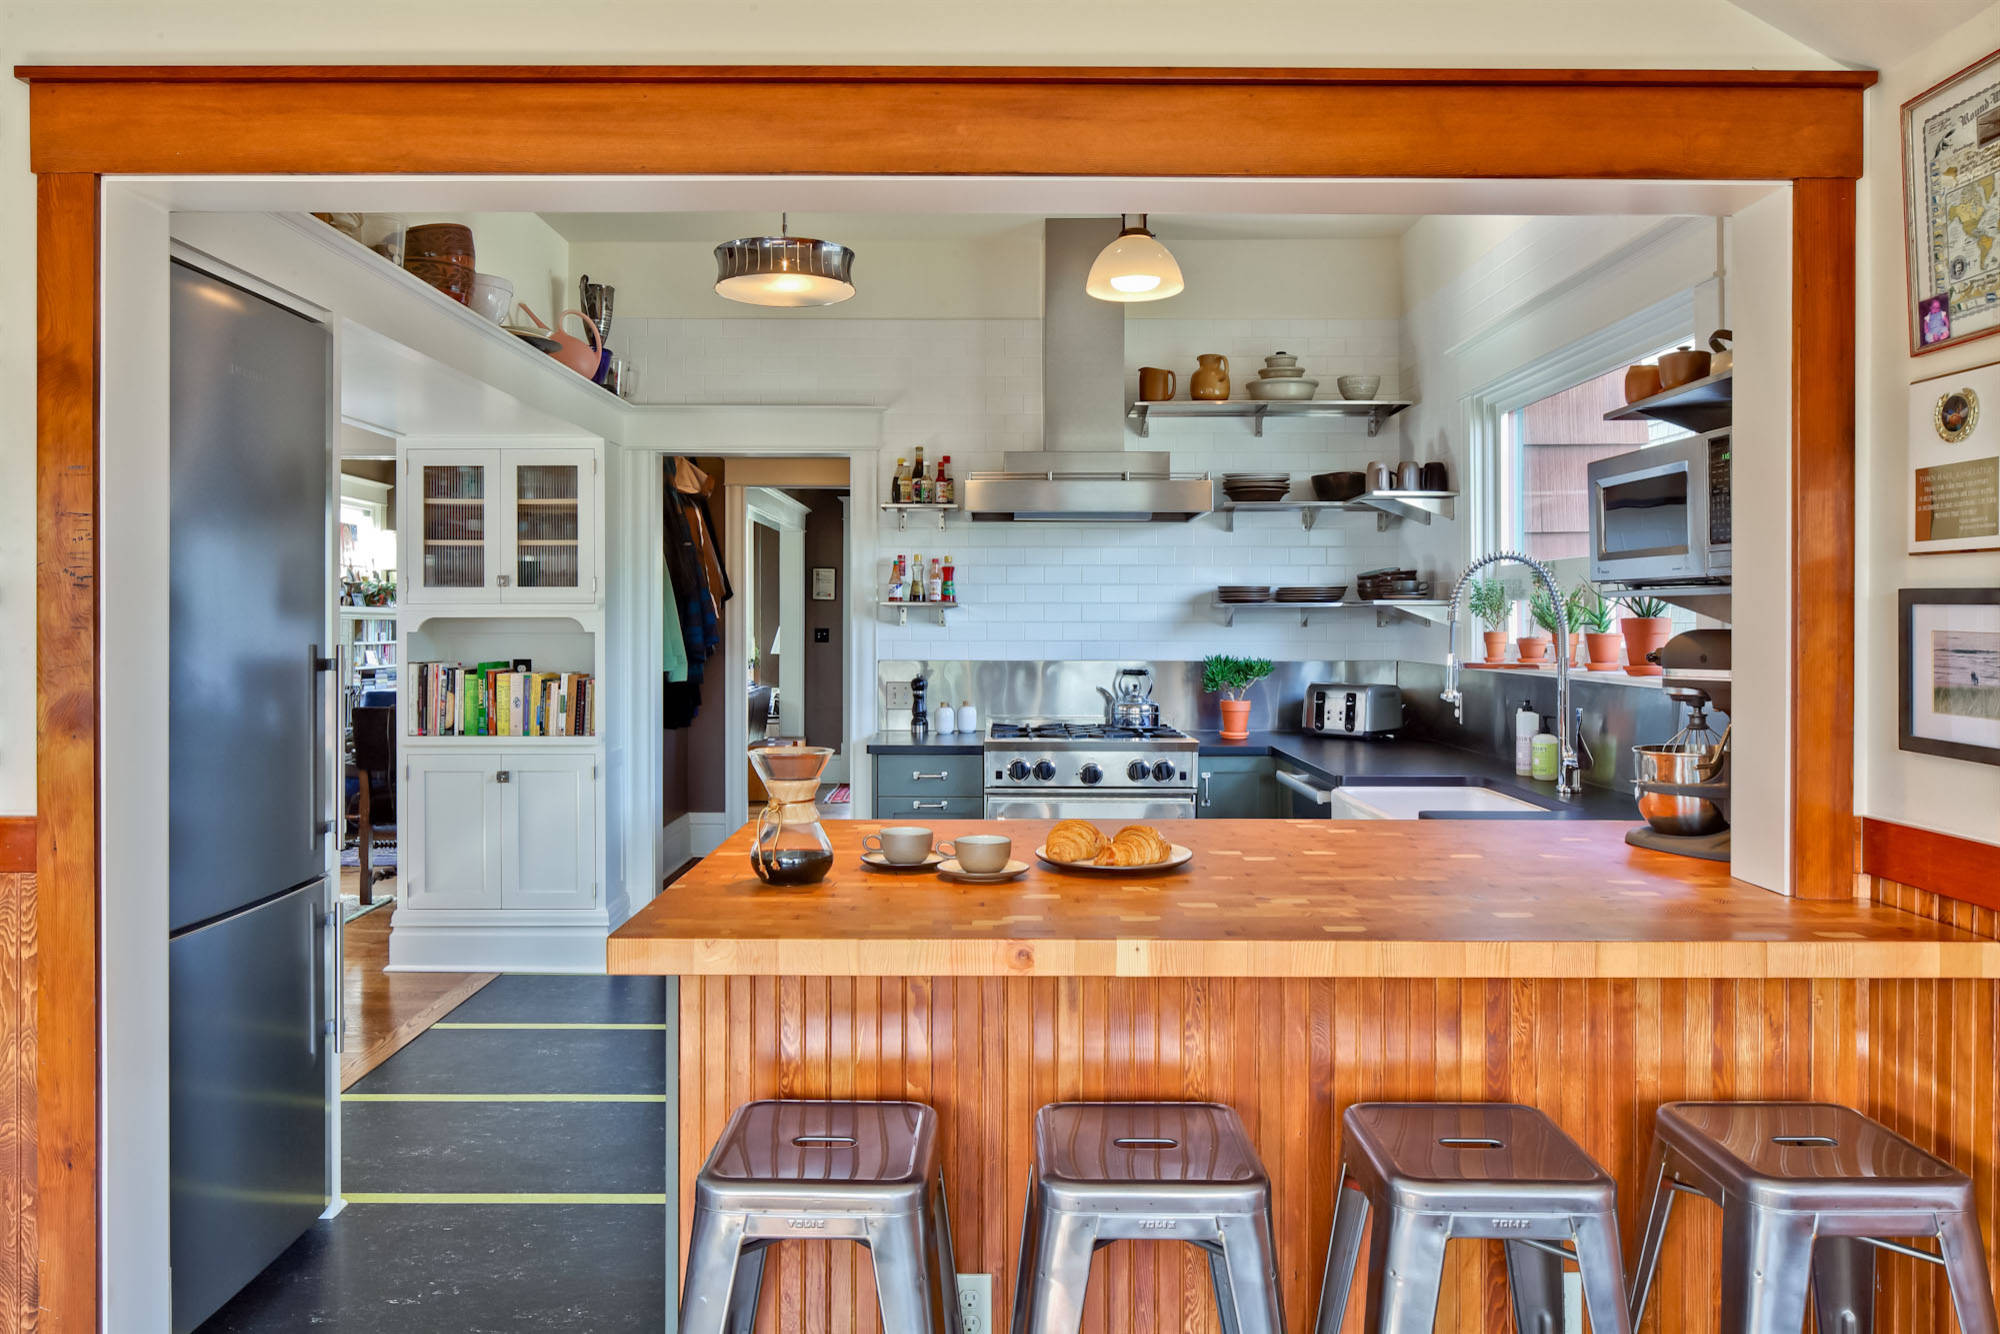 25 способов организовать пространство на кухне: идеи для хранения